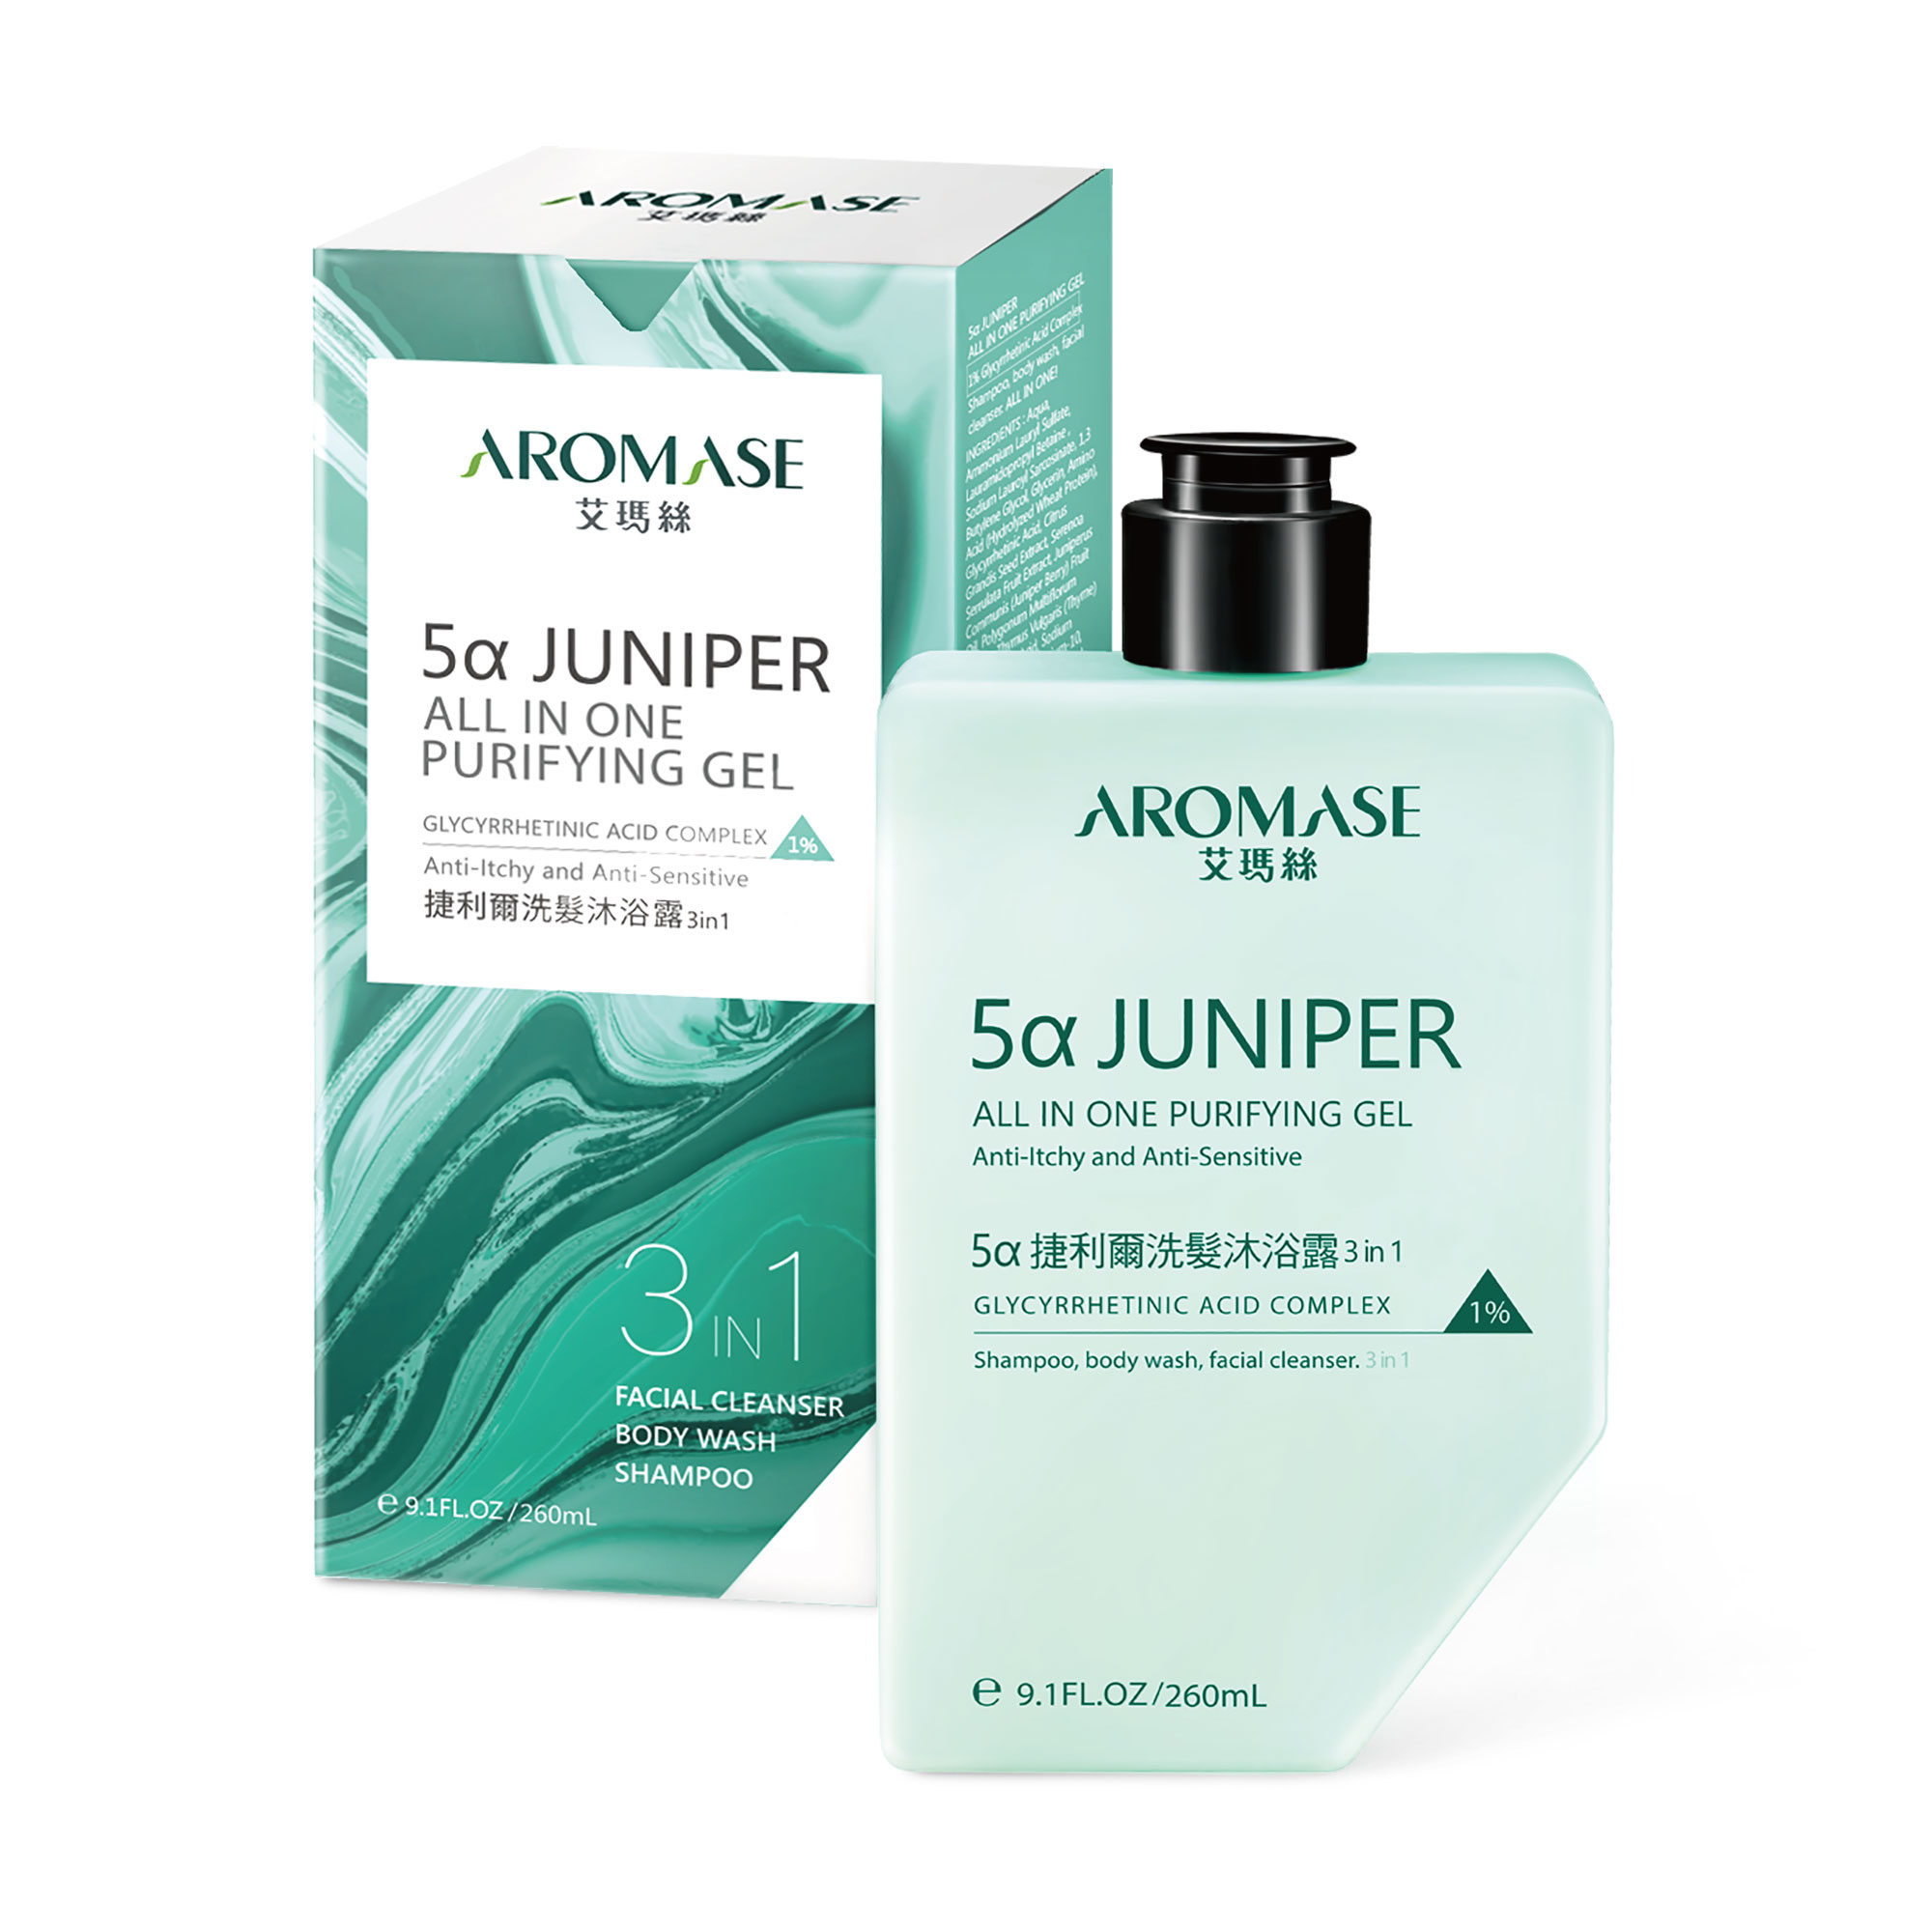 5α Juniper Head-To-Toe Shampoo & Body Wash ( for Face, Body & Scalp)-MacroHI co., Ltd